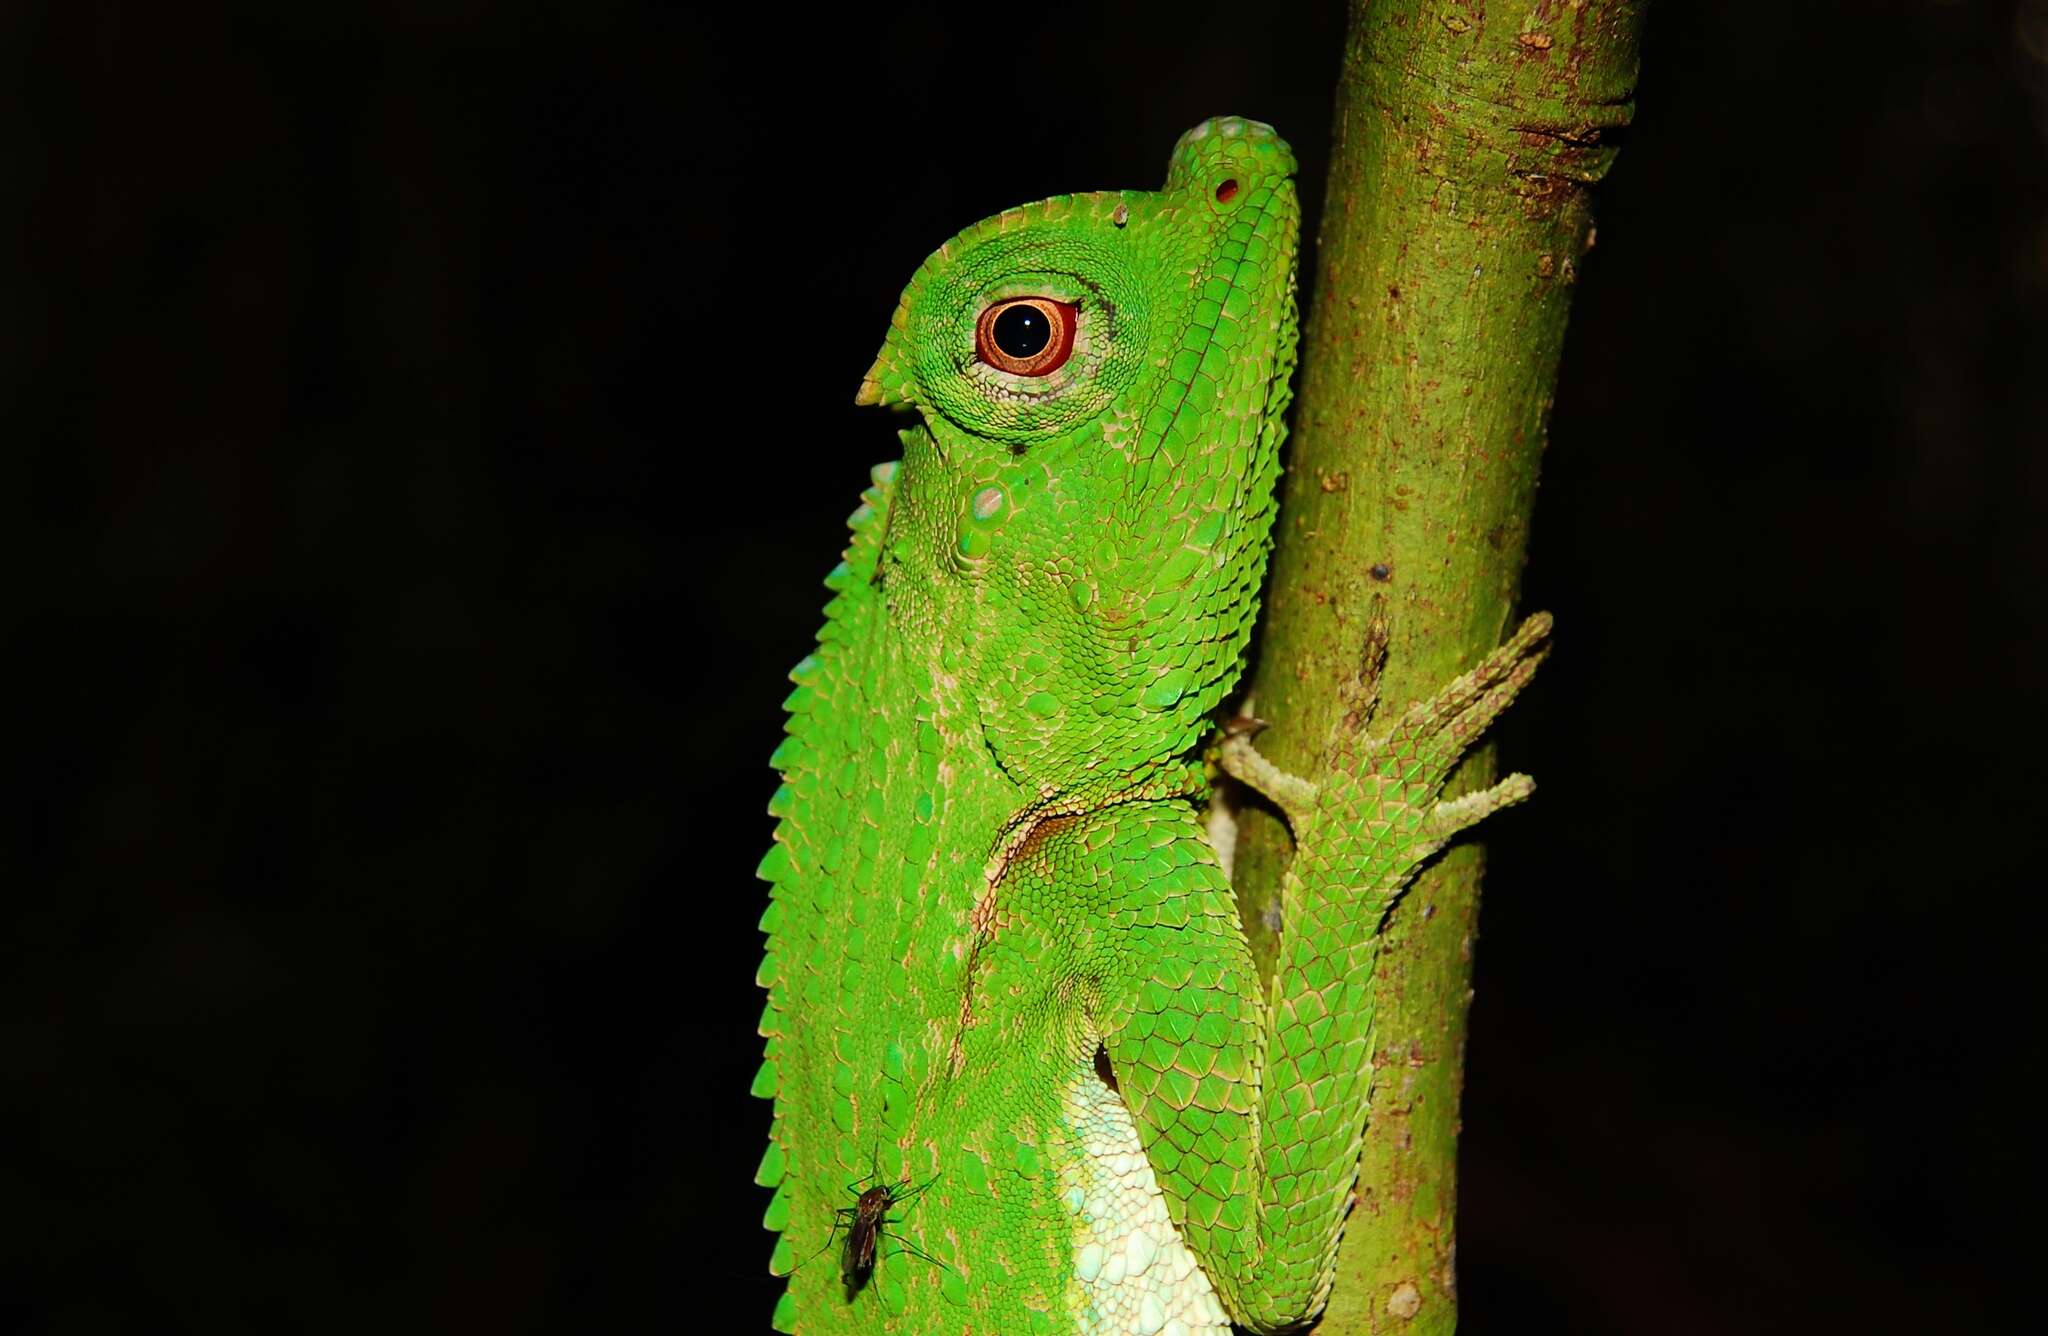 Image of LyreShead Lizard